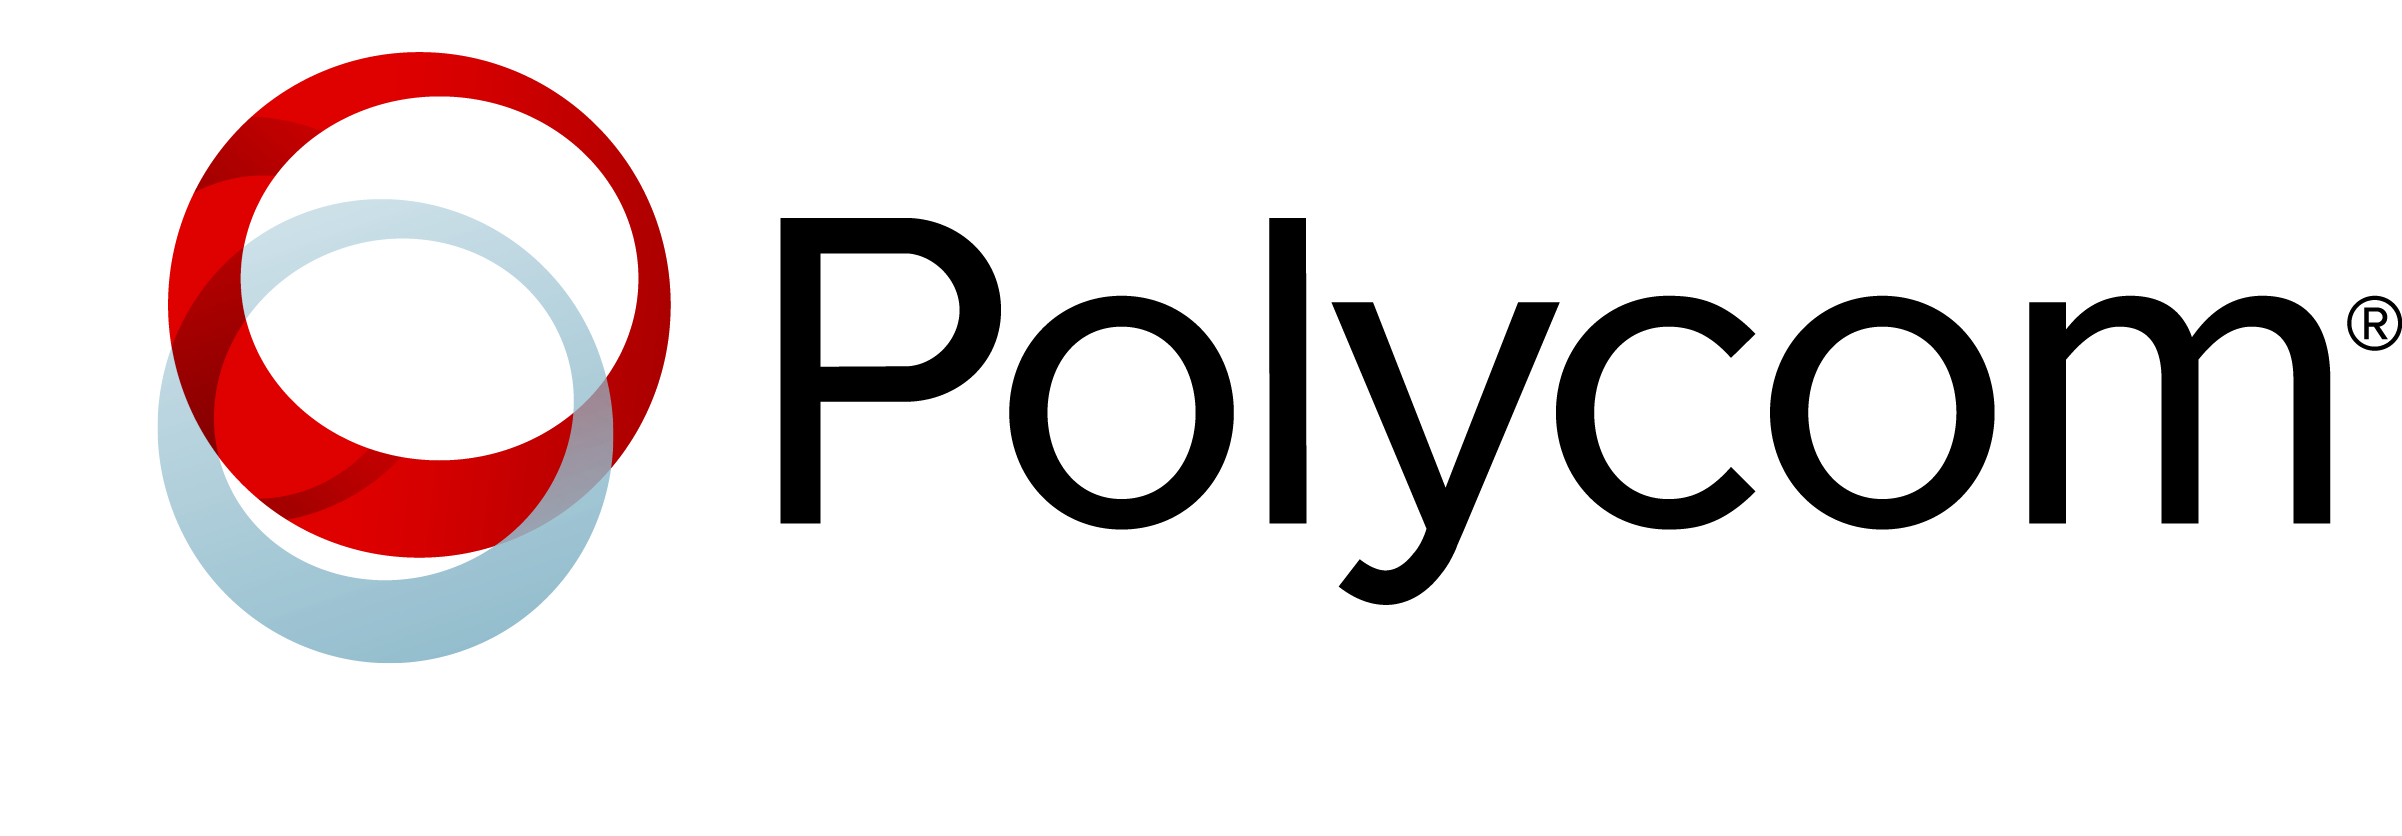 Polycom Brand Logo